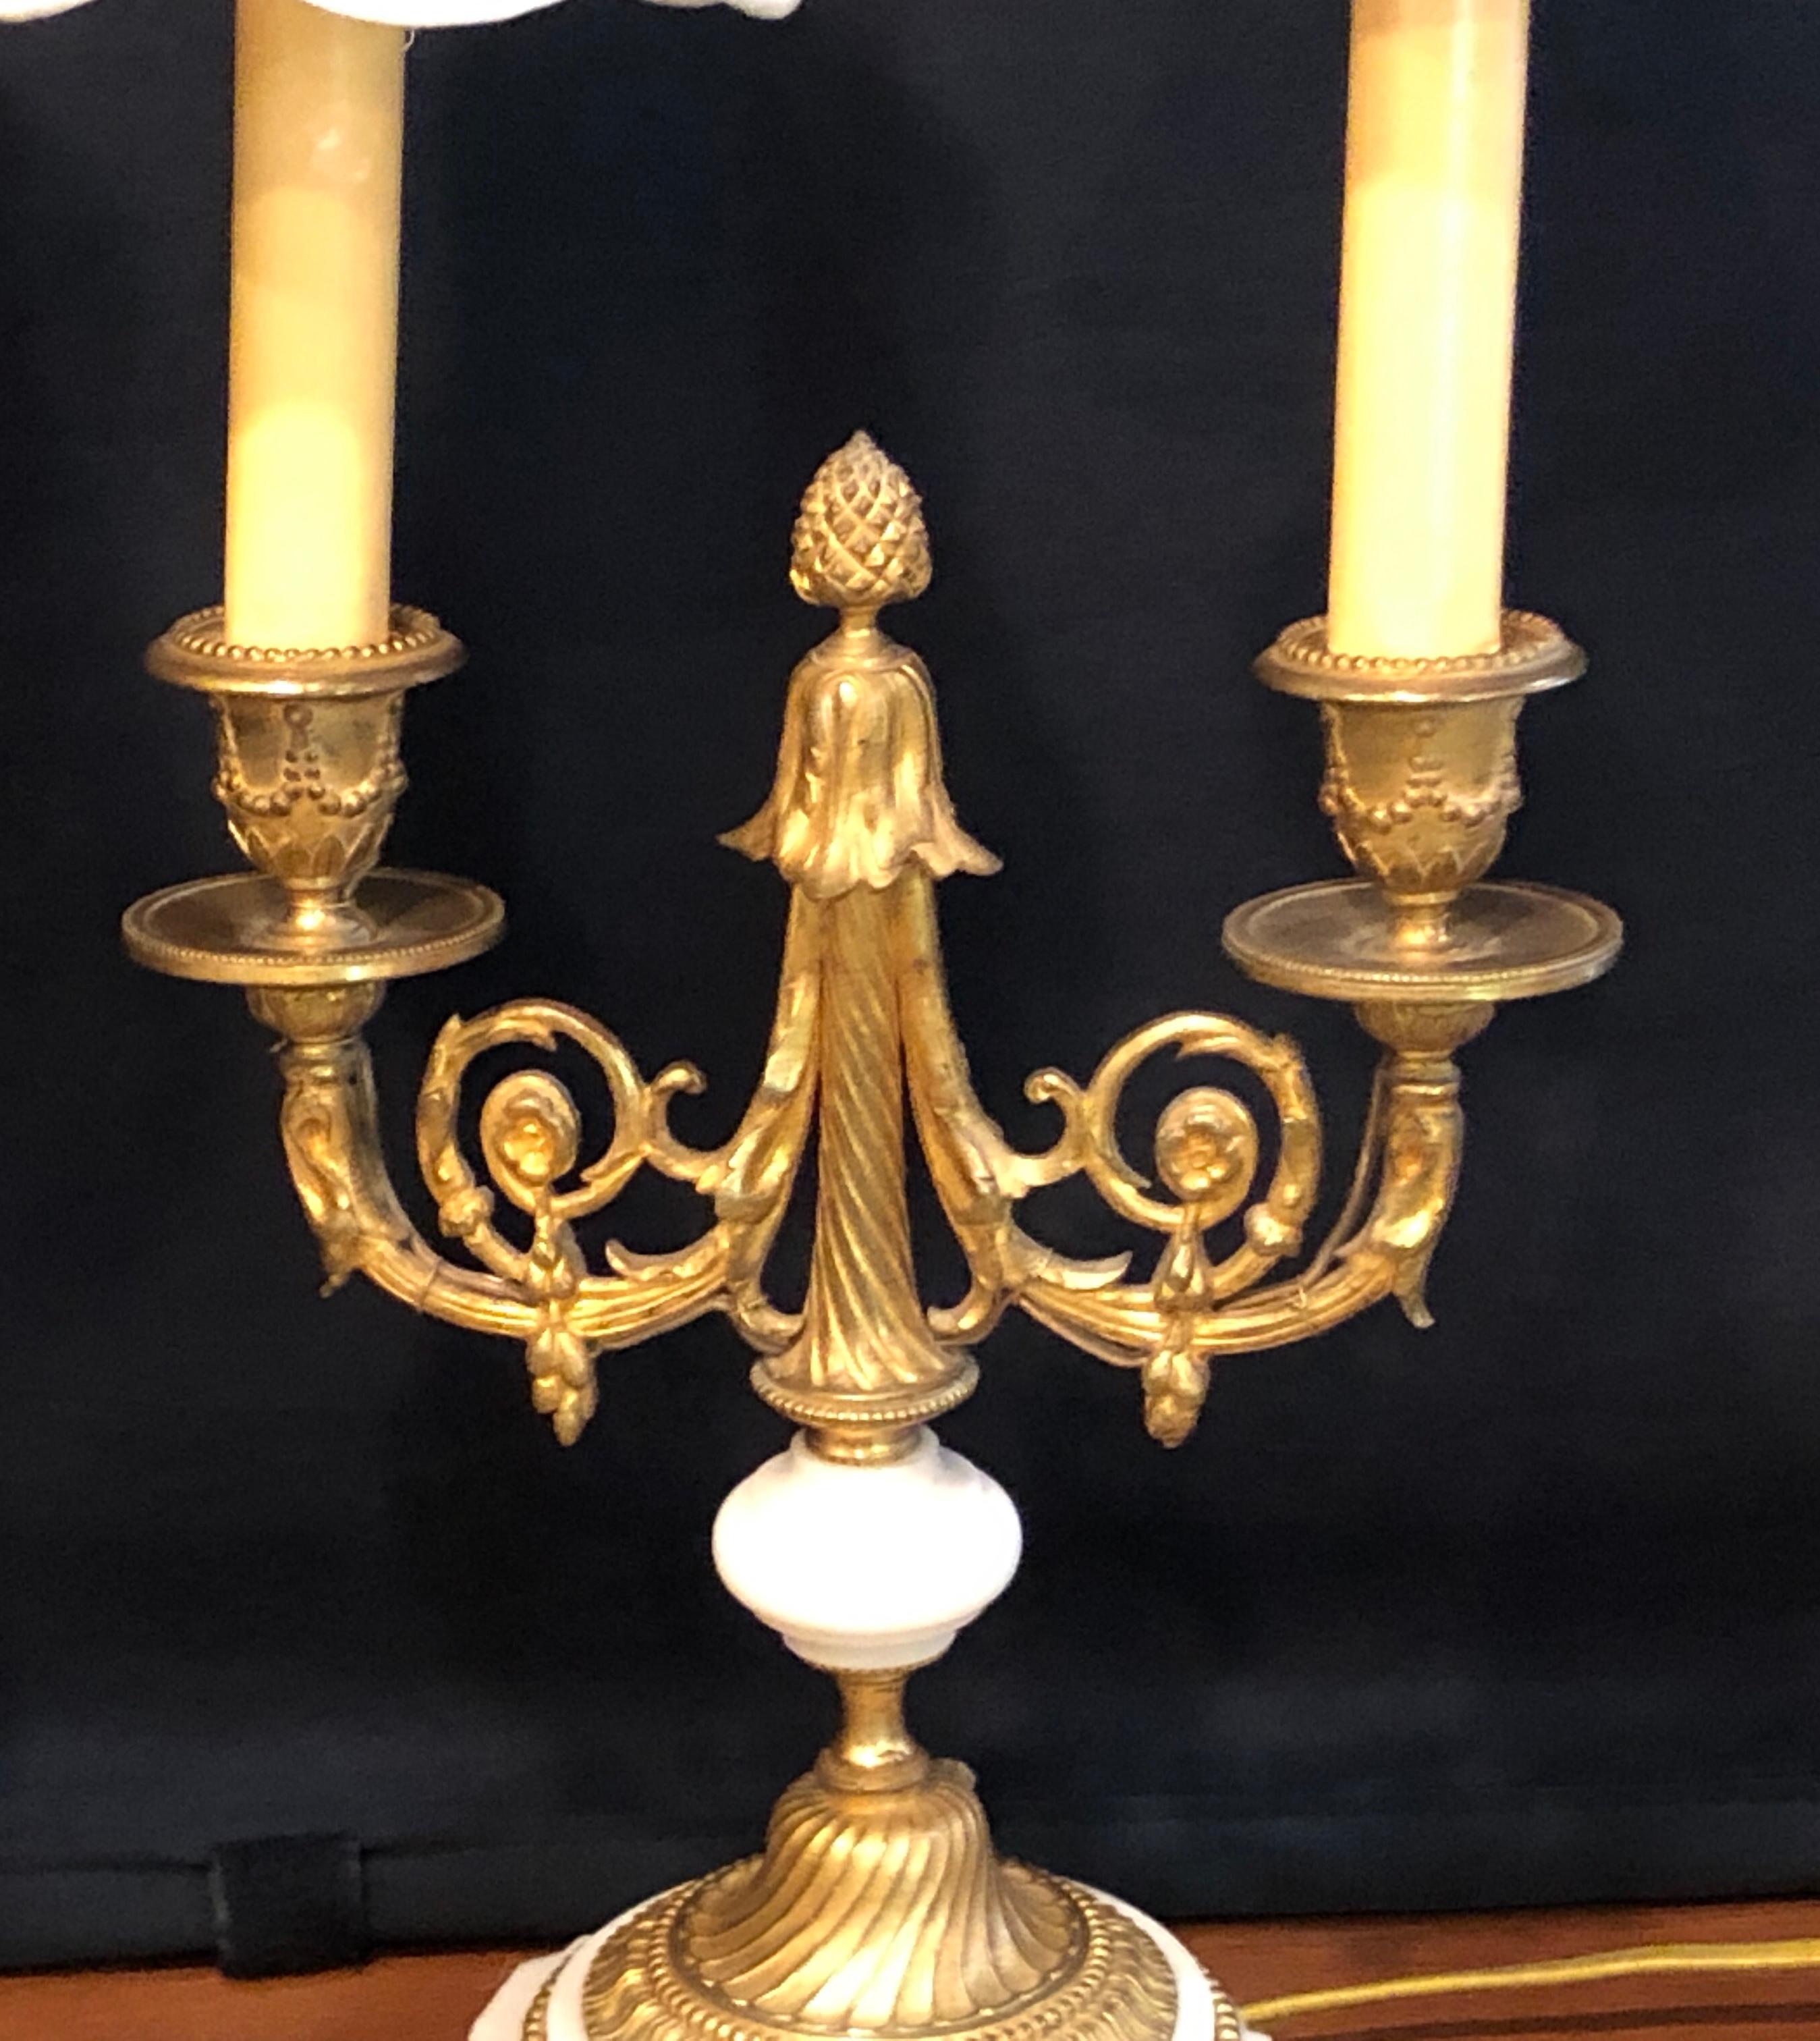 Paire de candélabres ou lampes de table de style Louis XVI en bronze doré et marbre. Ces fines lampes de table du 19e et du début du 20e siècle sont tout simplement stupéfiantes, avec les plus beaux moulages en bronze doré que l'on puisse espérer.